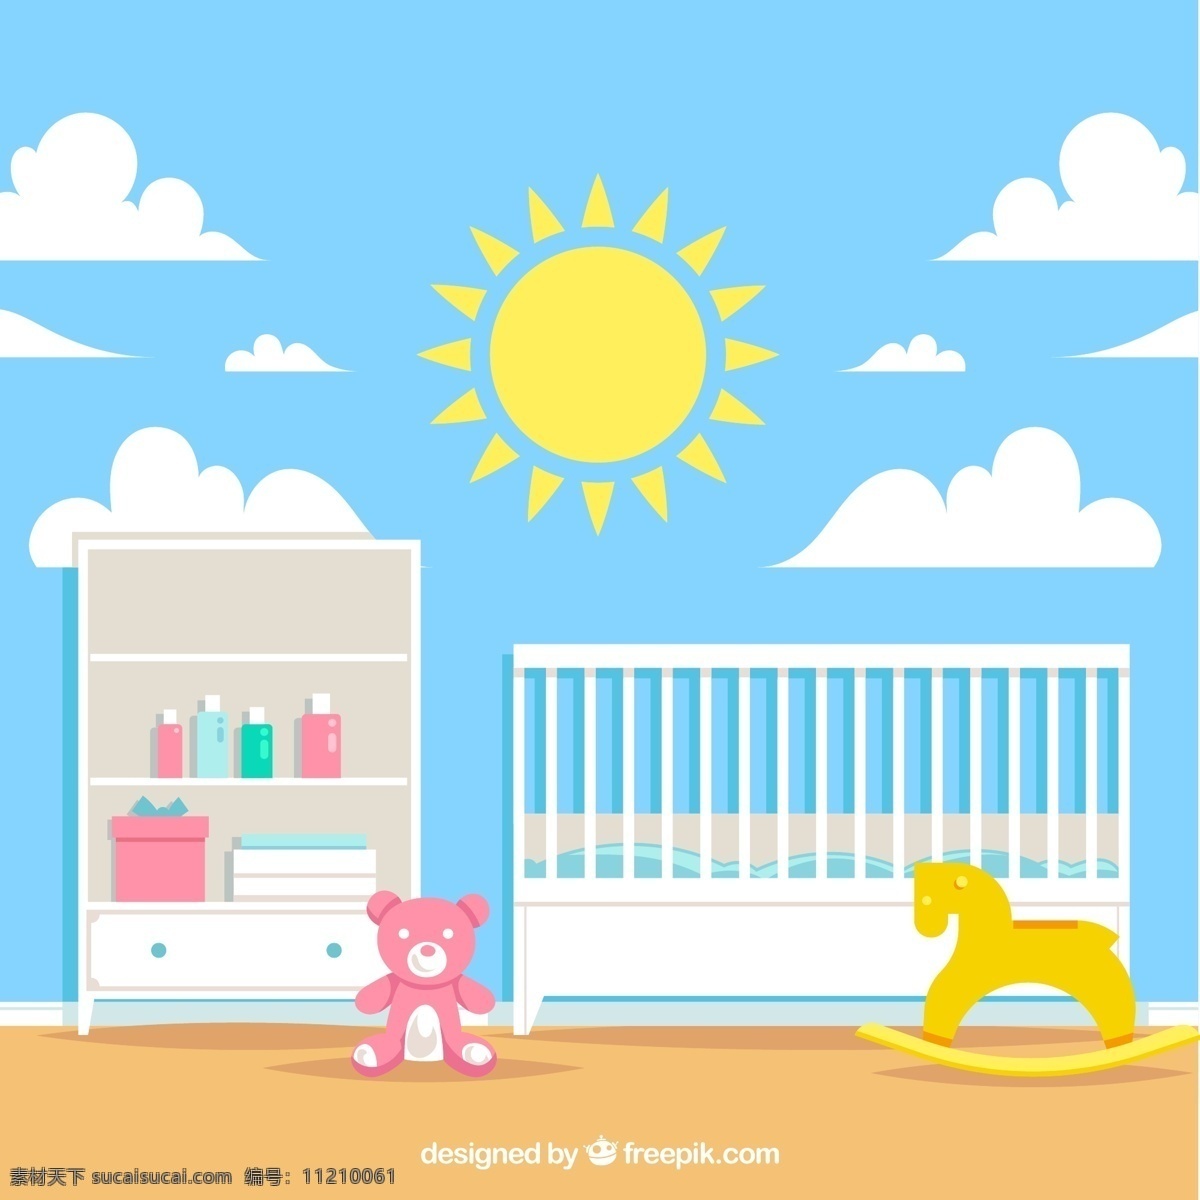 可爱 白色 家具 婴儿 房 婴儿房 玩具熊 木马 太阳 背景边框 动漫动画 风景漫画